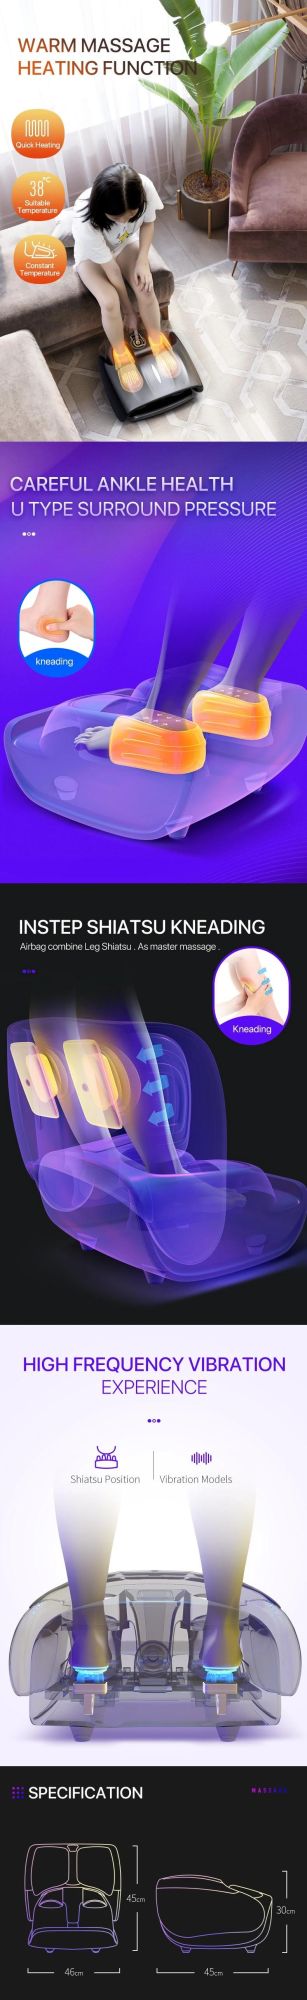 Wellcare Massager Kmart Mat Pillow Wear Office Shiatsu 2020 Plastic SPA Heating Leg Boot Foot Massage Roller Massage Ball